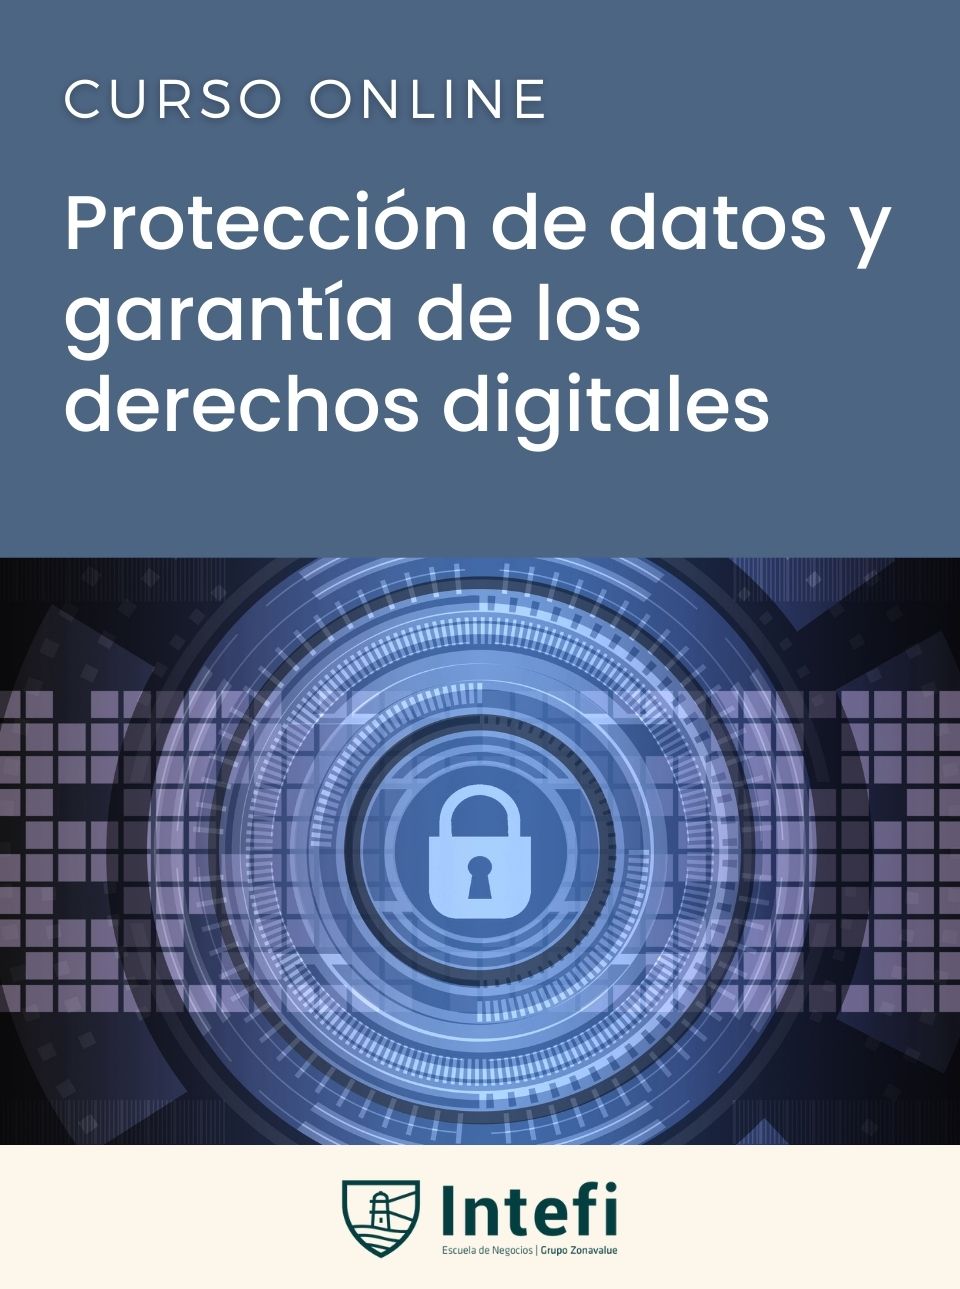 Curso de protección de datos y garantía de los derechos digitales Intefi